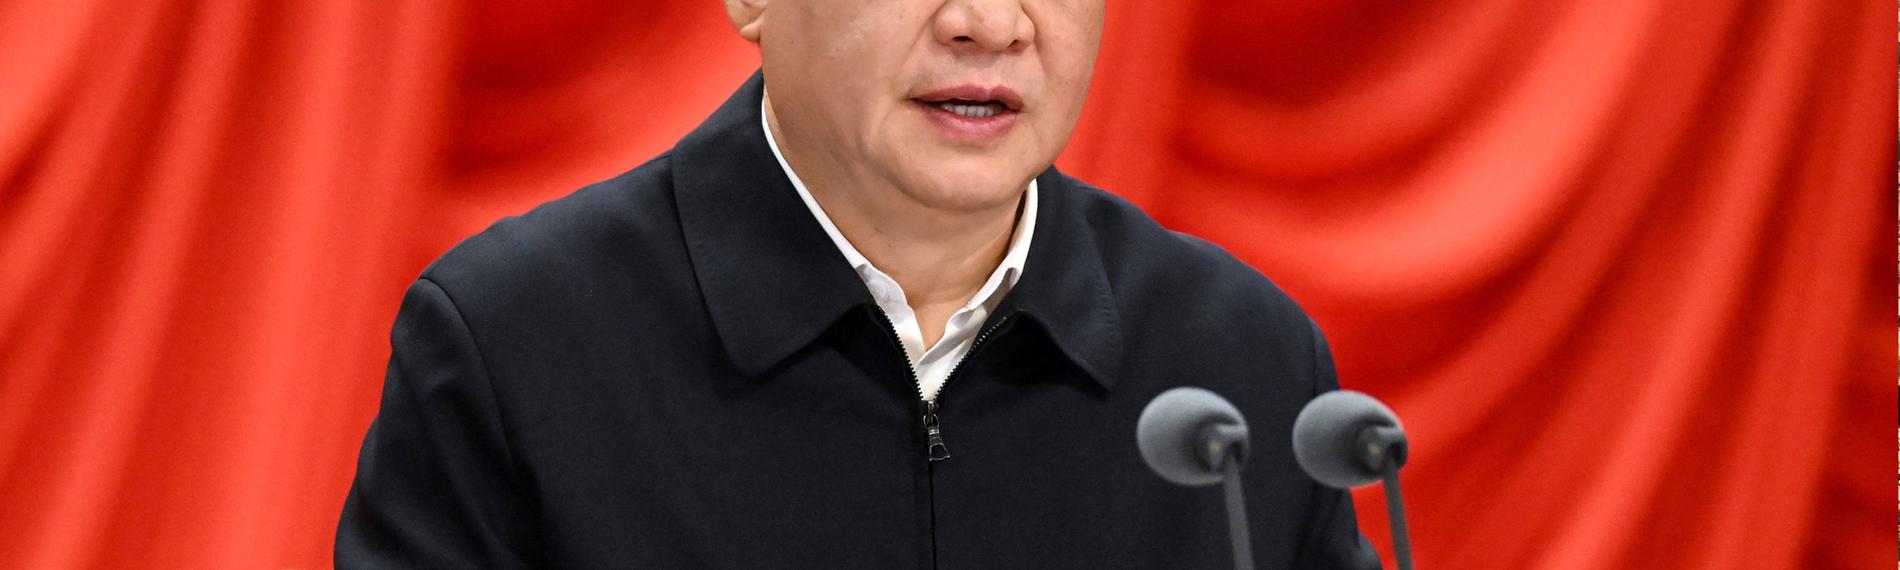 Xi Jinping spricht am 7.2.2023 in Peking, China